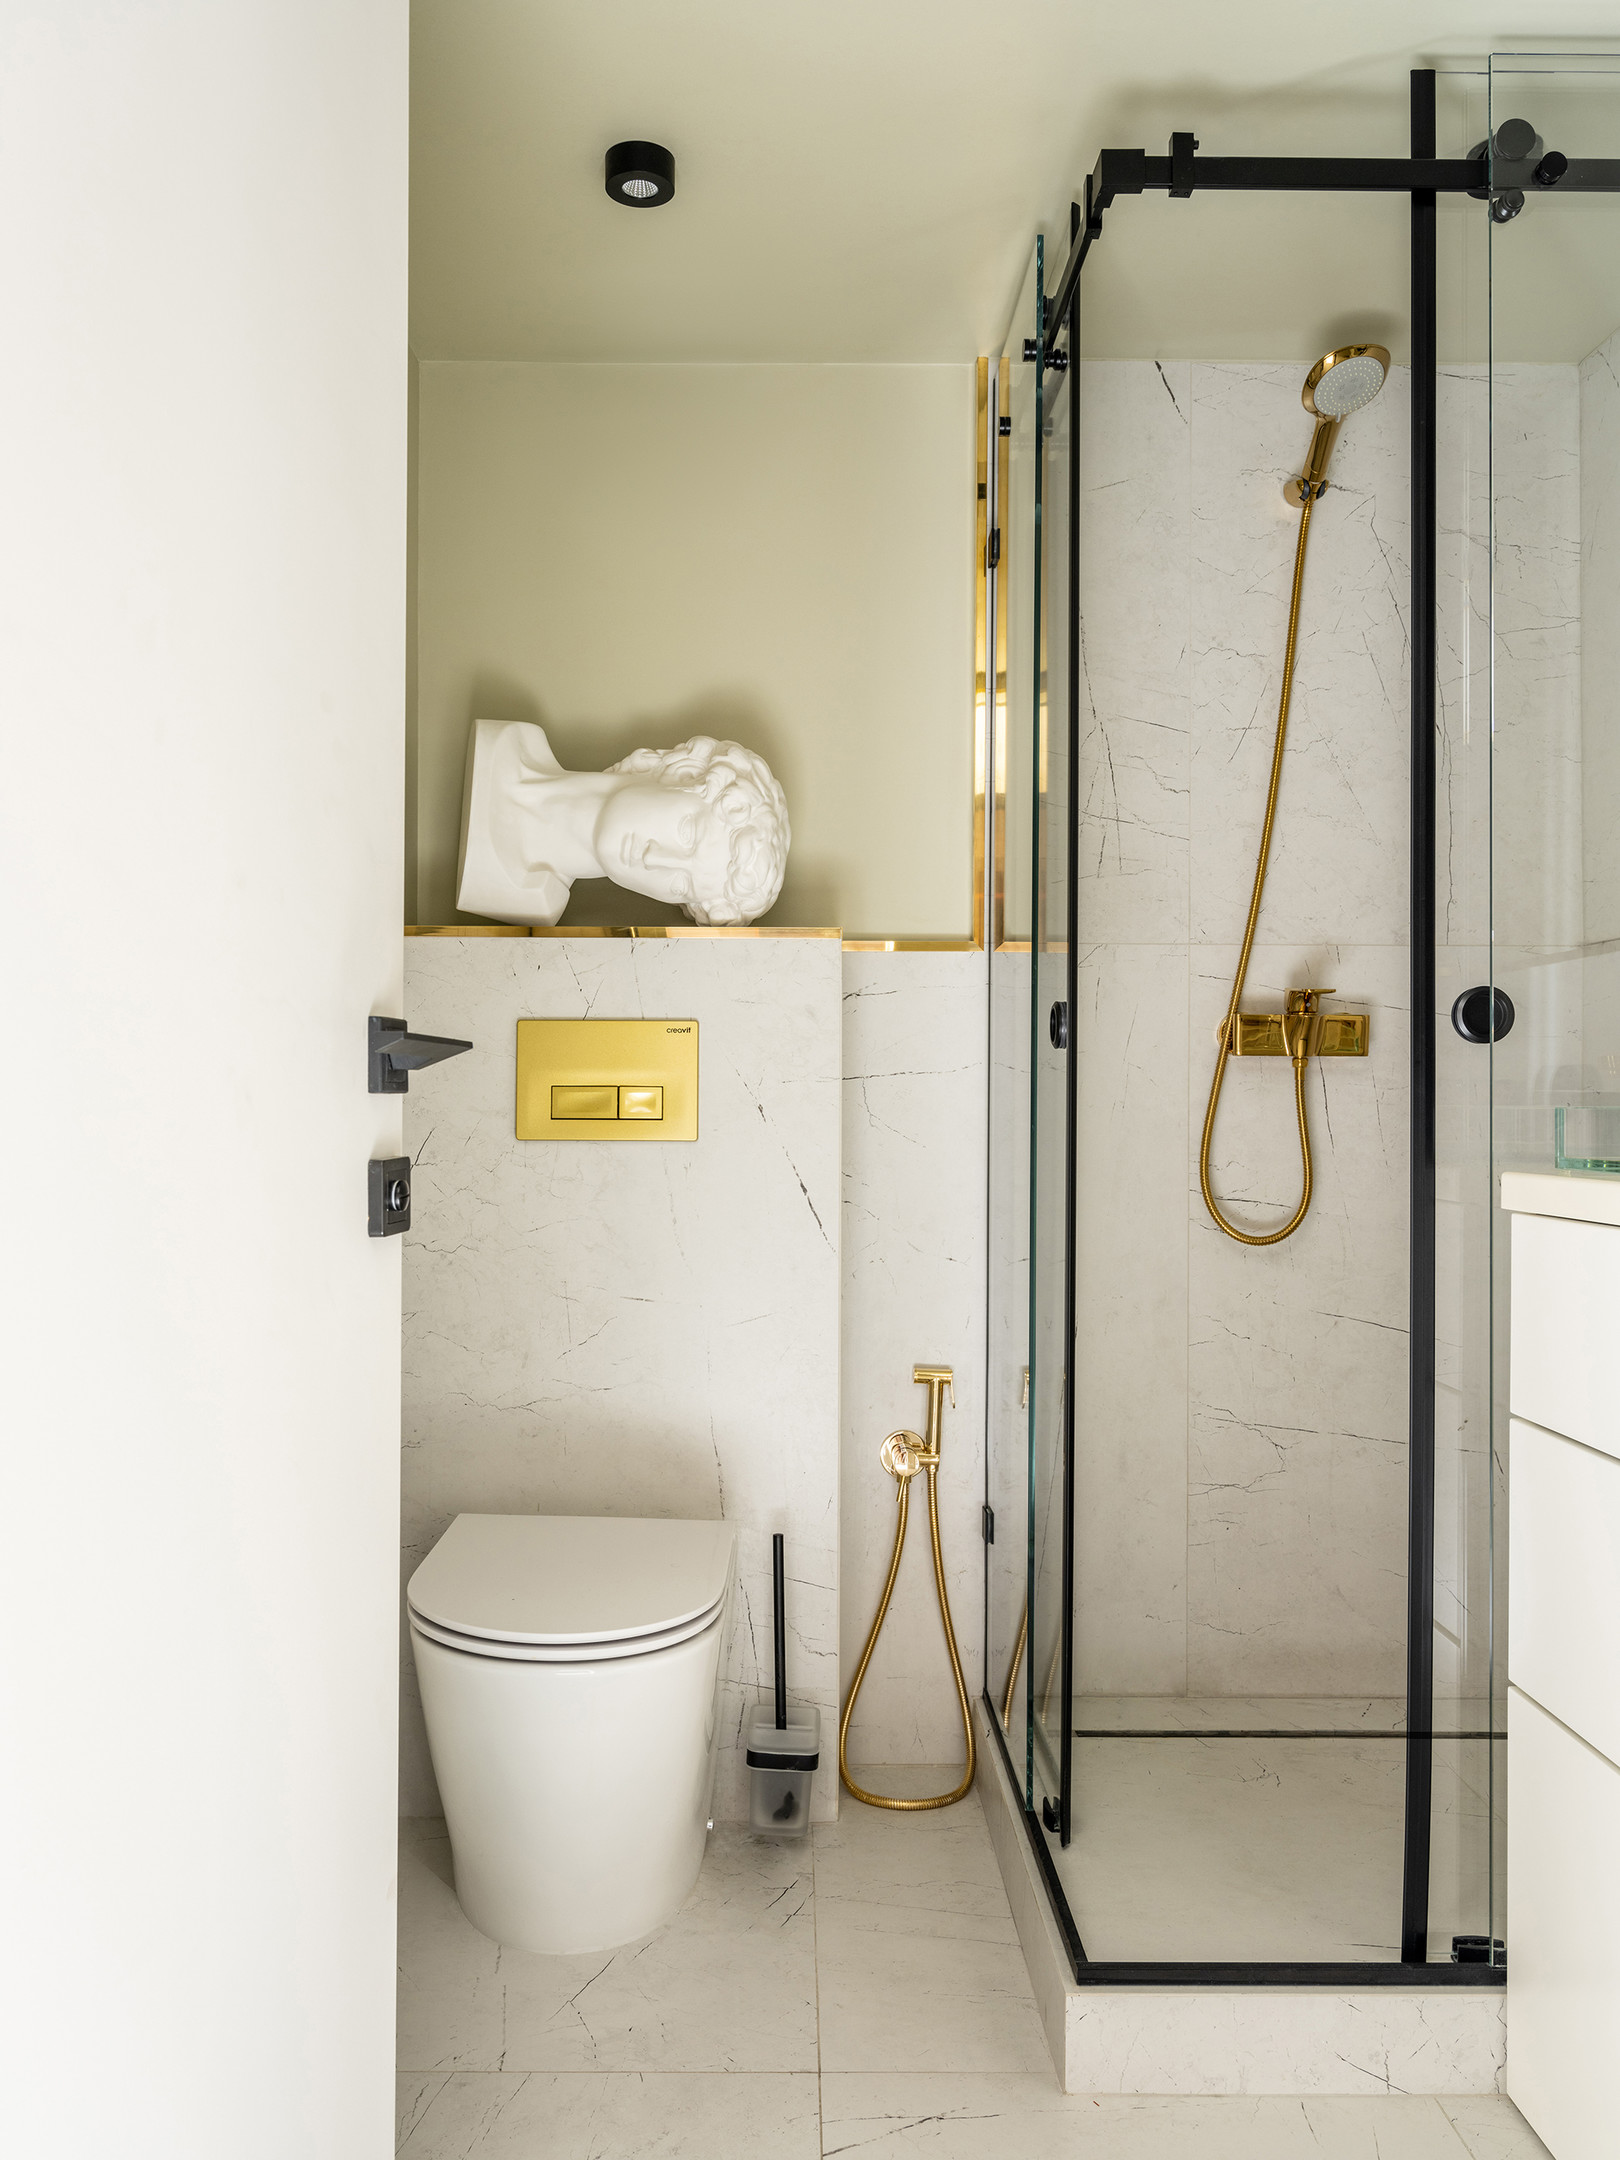 Hệ thống vòi sen, vòi xịt nước hay nút xả bồn toilet bằng đồng thau phản chiếu ánh sáng lấp lánh trên bề mặt tạo cho phòng tắm thêm quyến rũ.